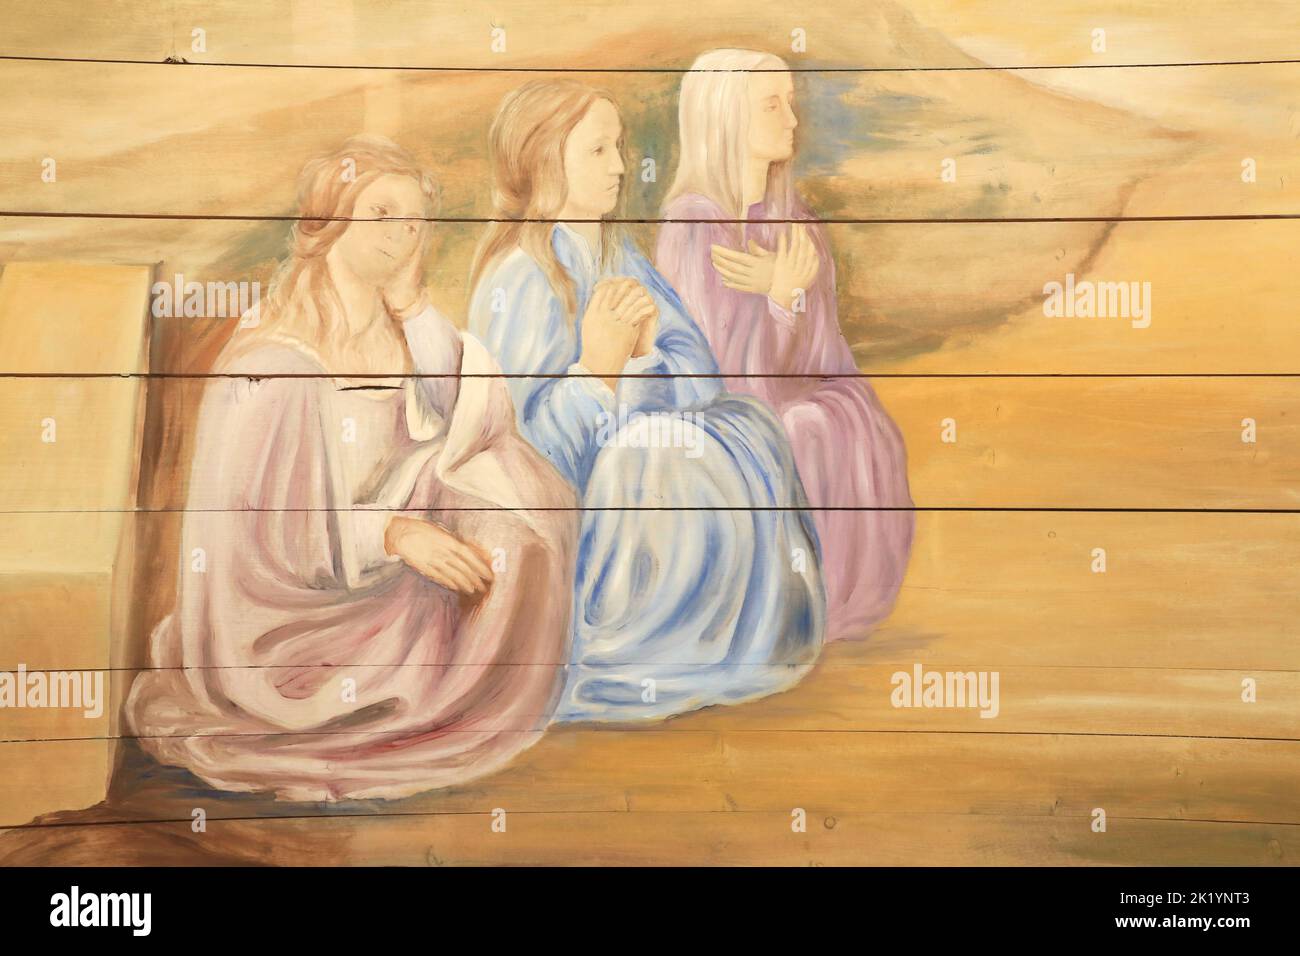 Saint-Nicolas, Évêque de Myre, tote trois jeunes filles pauvres. Distali. Peinture murale restaurée par Edouard Borga. Eglise Saint-Nicolas. Combloux. Foto Stock